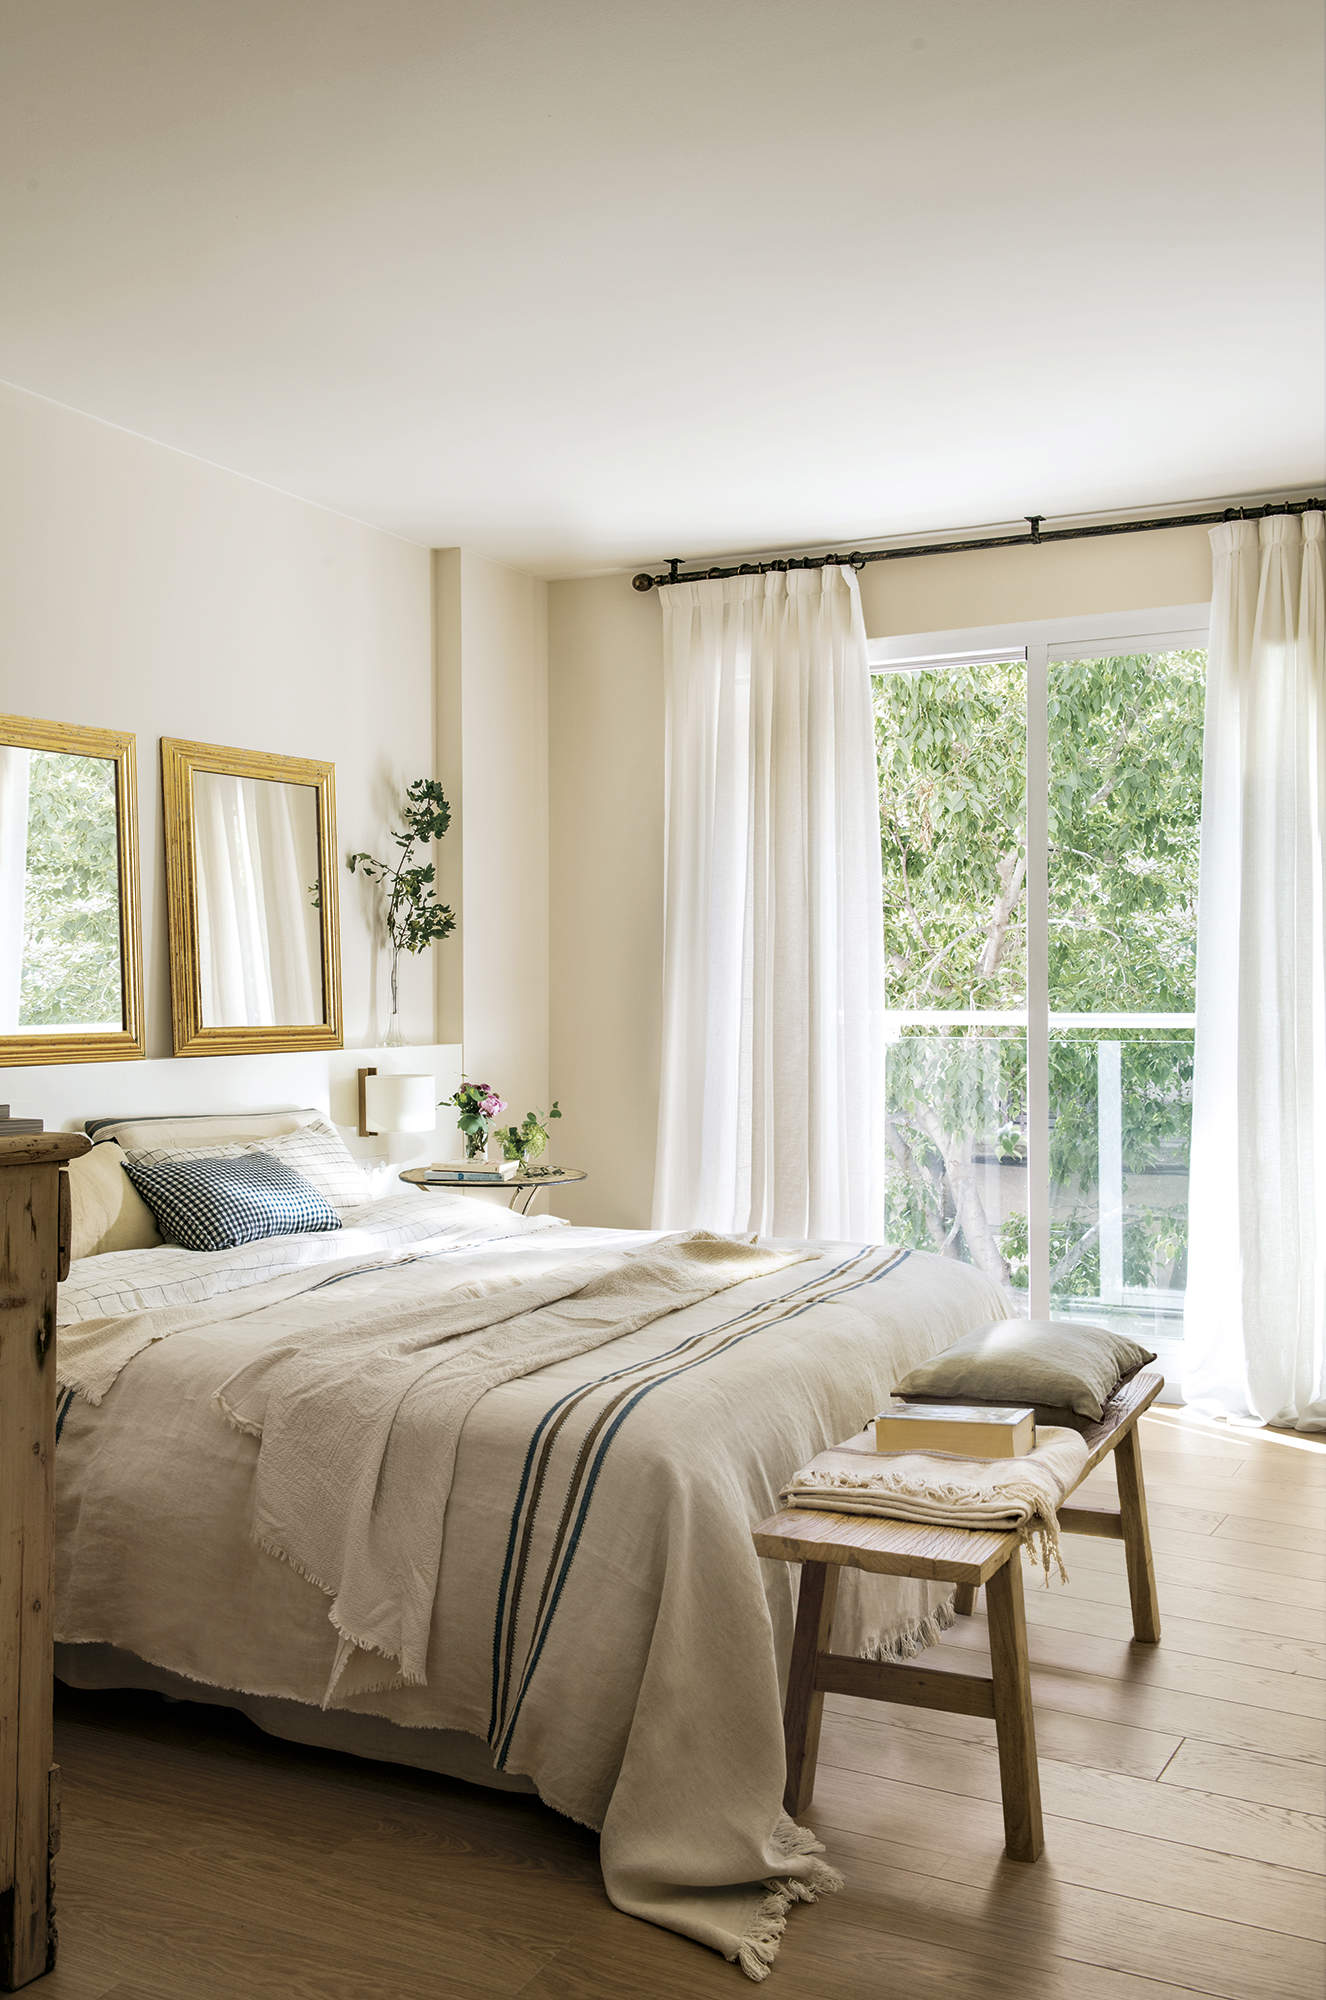 Dormitorio principal, suelo parquet, cortinas blancas, espejos, cabecero de obra, ropa de cama beige